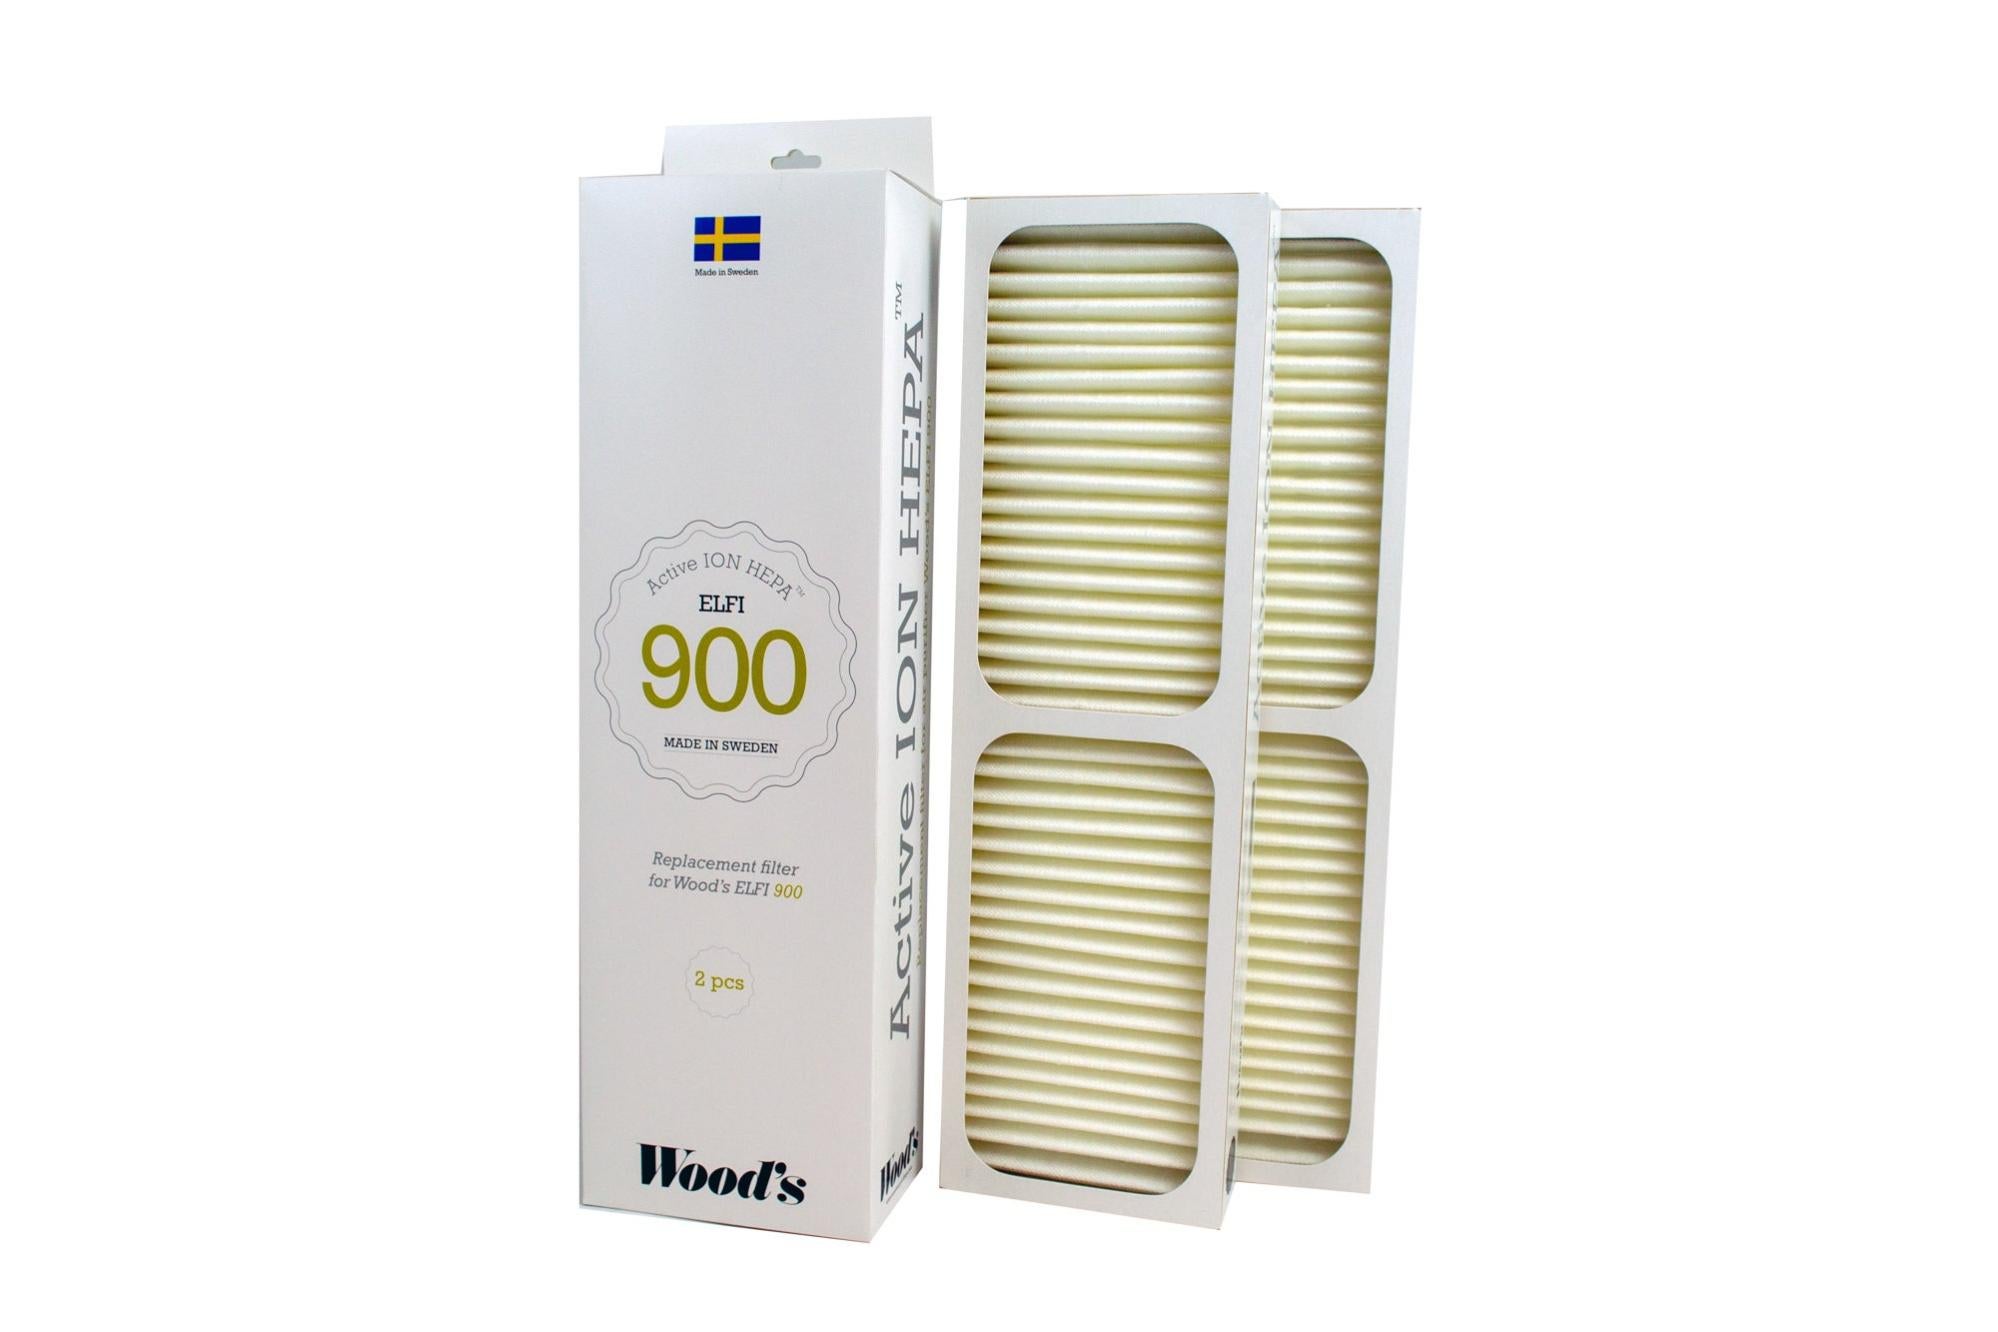 Pack 2 filtros hepa para purificador gran 900